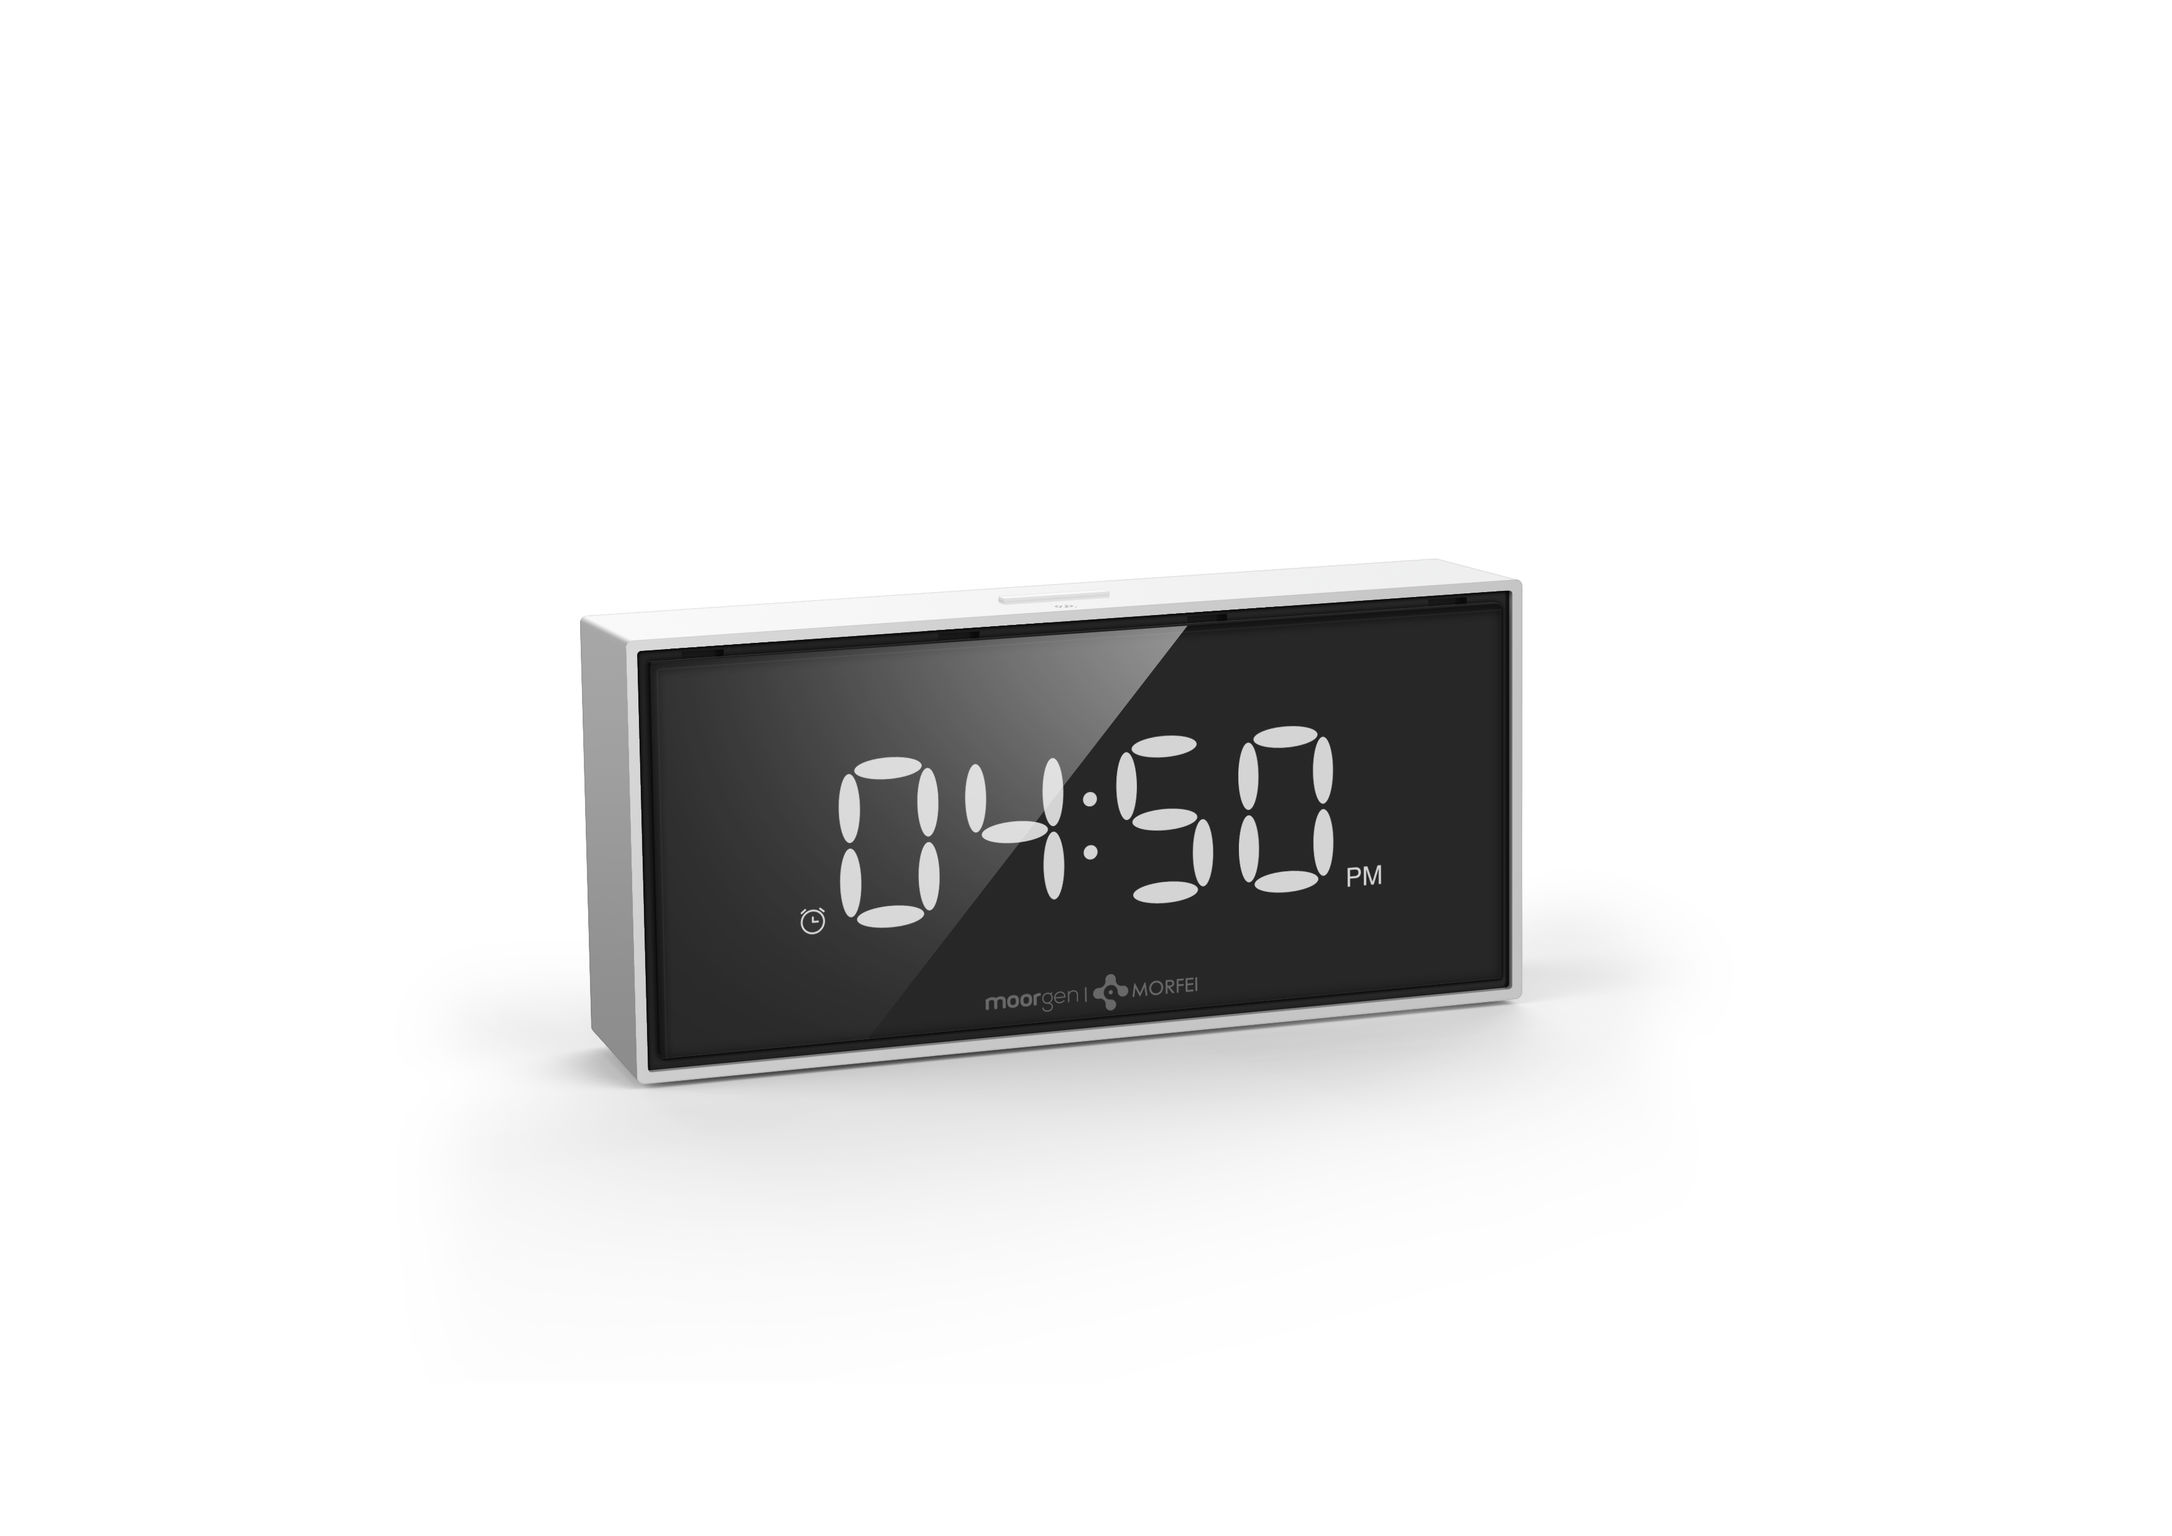 Moorgen Smart alarm clock